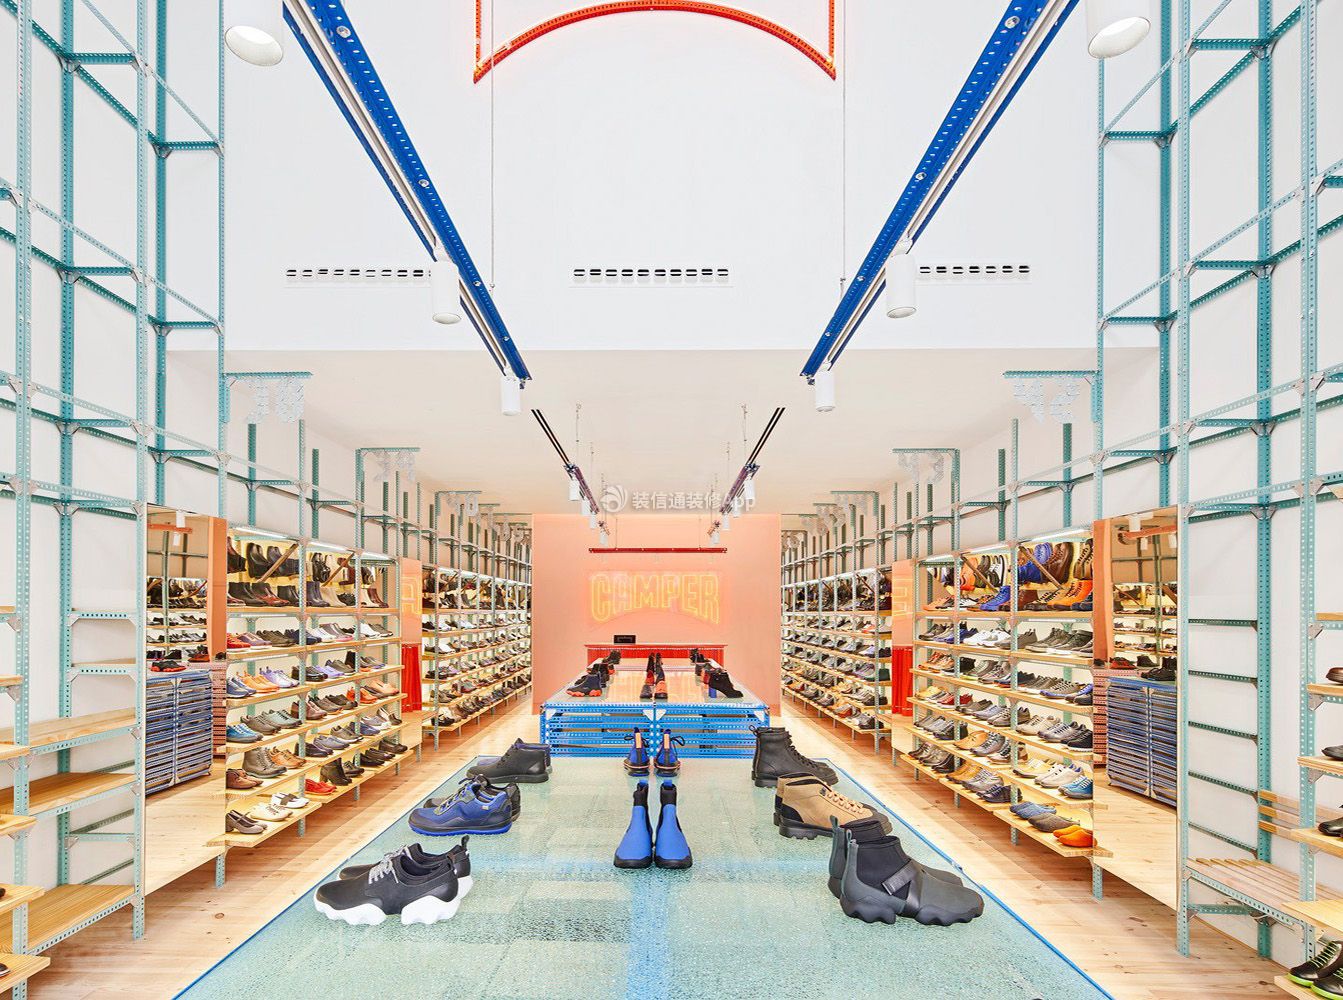 鞋店装修哪种风格更吸引顾客?6组最新鞋店装修设计图 - 公装知识 - 装一网